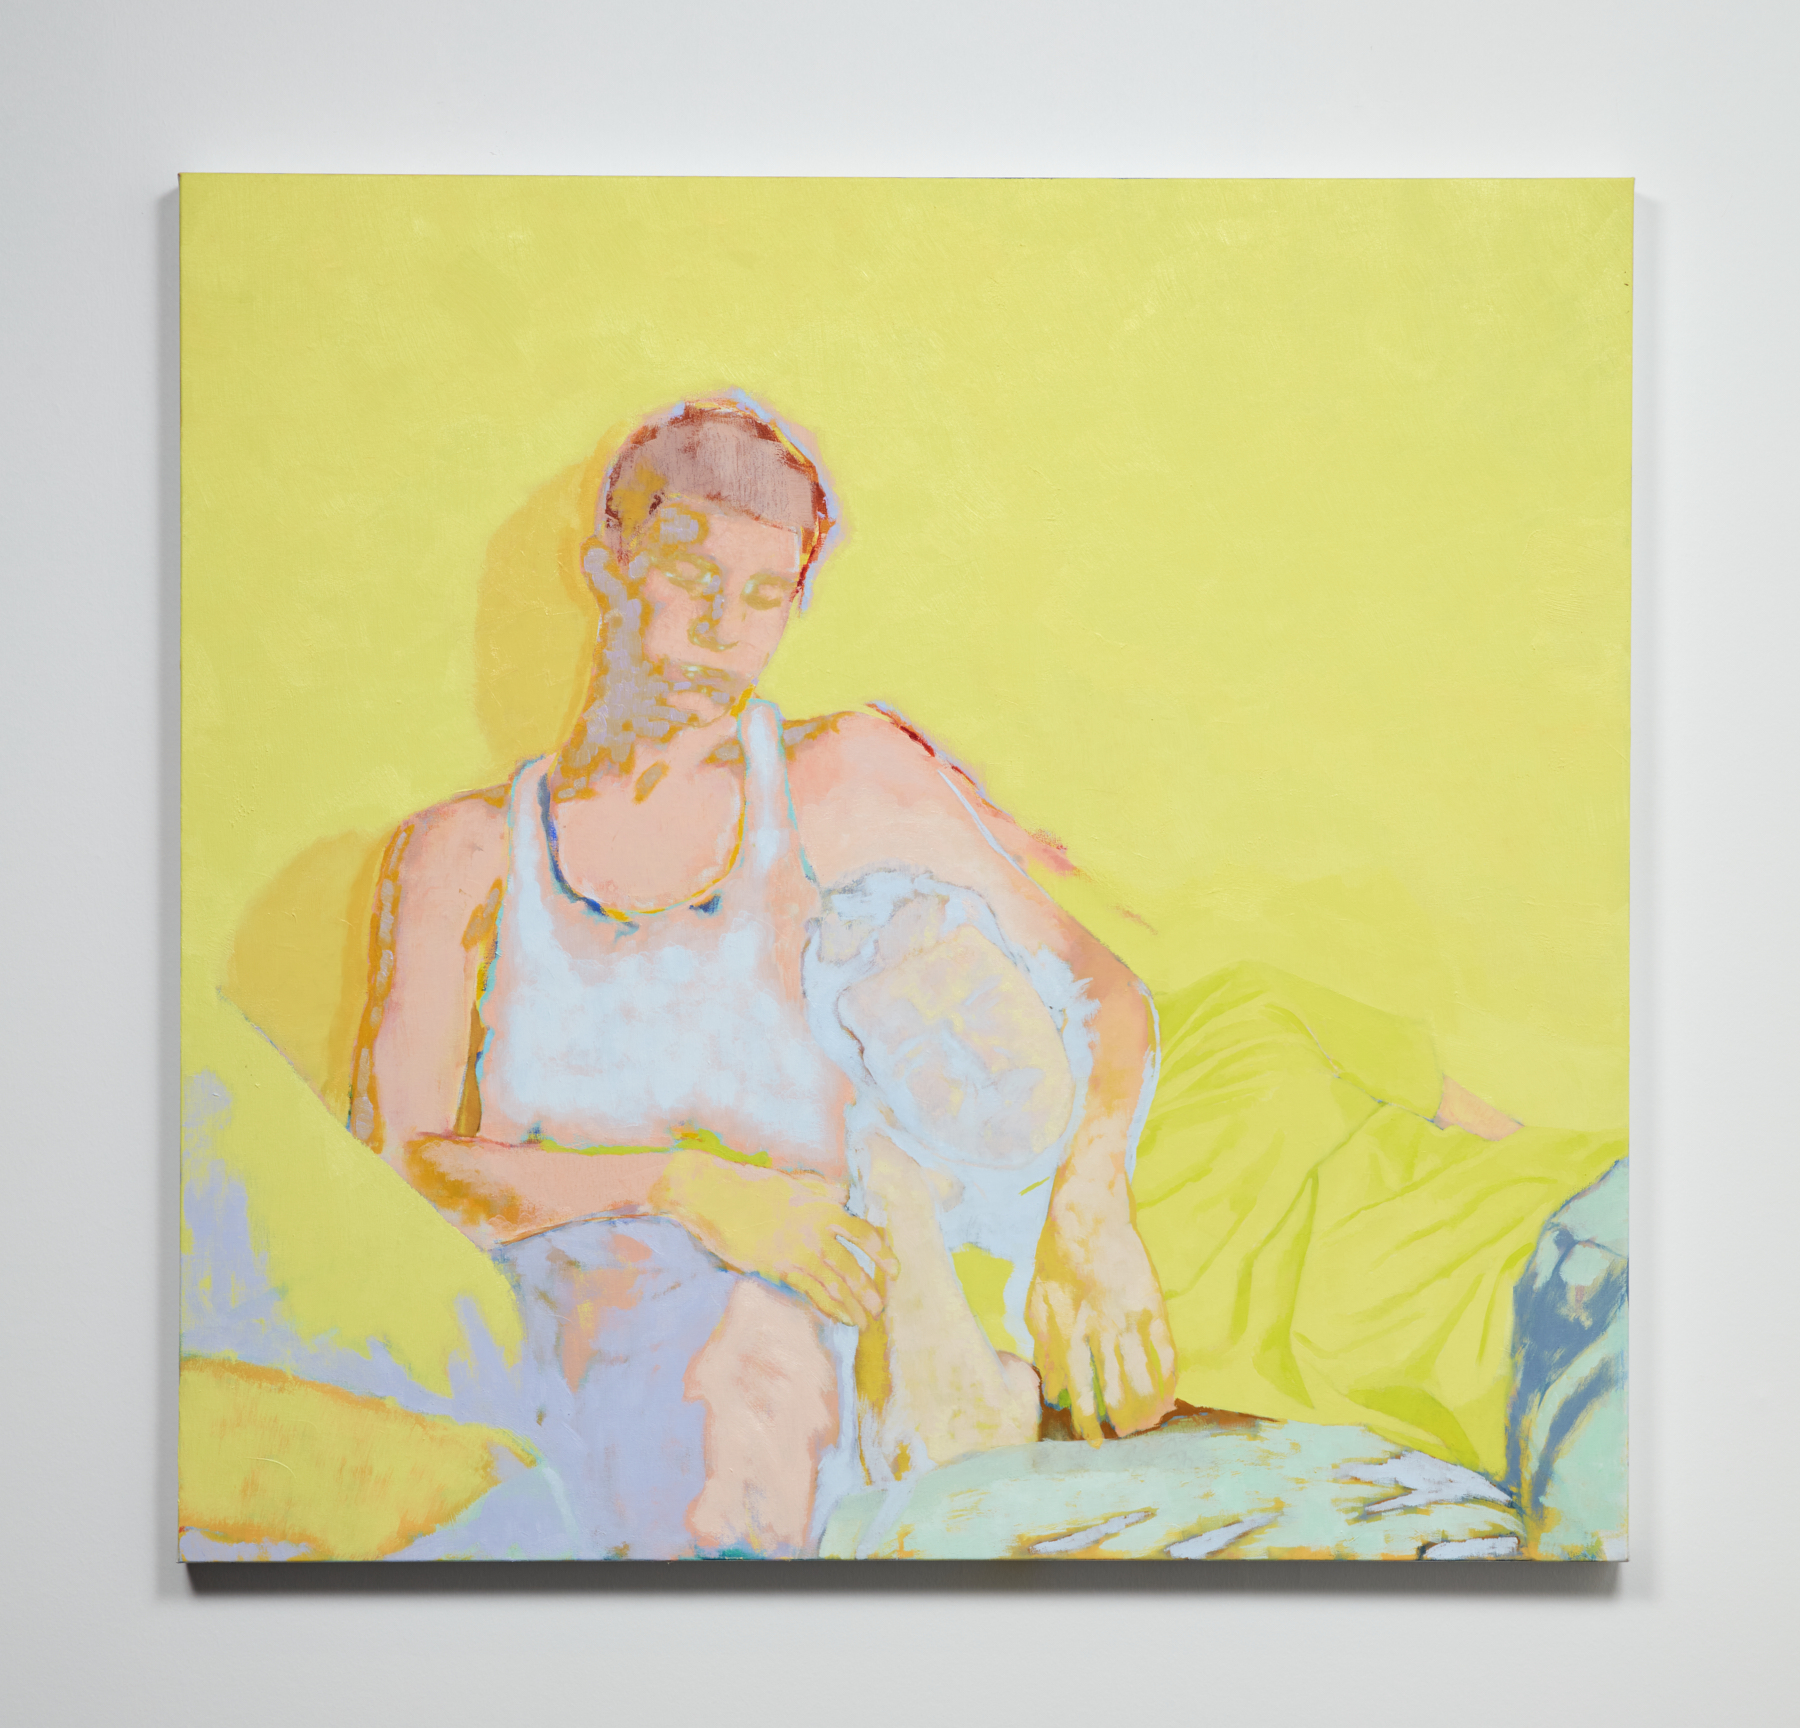 Simon Martin, Couple, 2021, huile et acrylique sur toile, 105x110cm. Photo Studio Shapiro